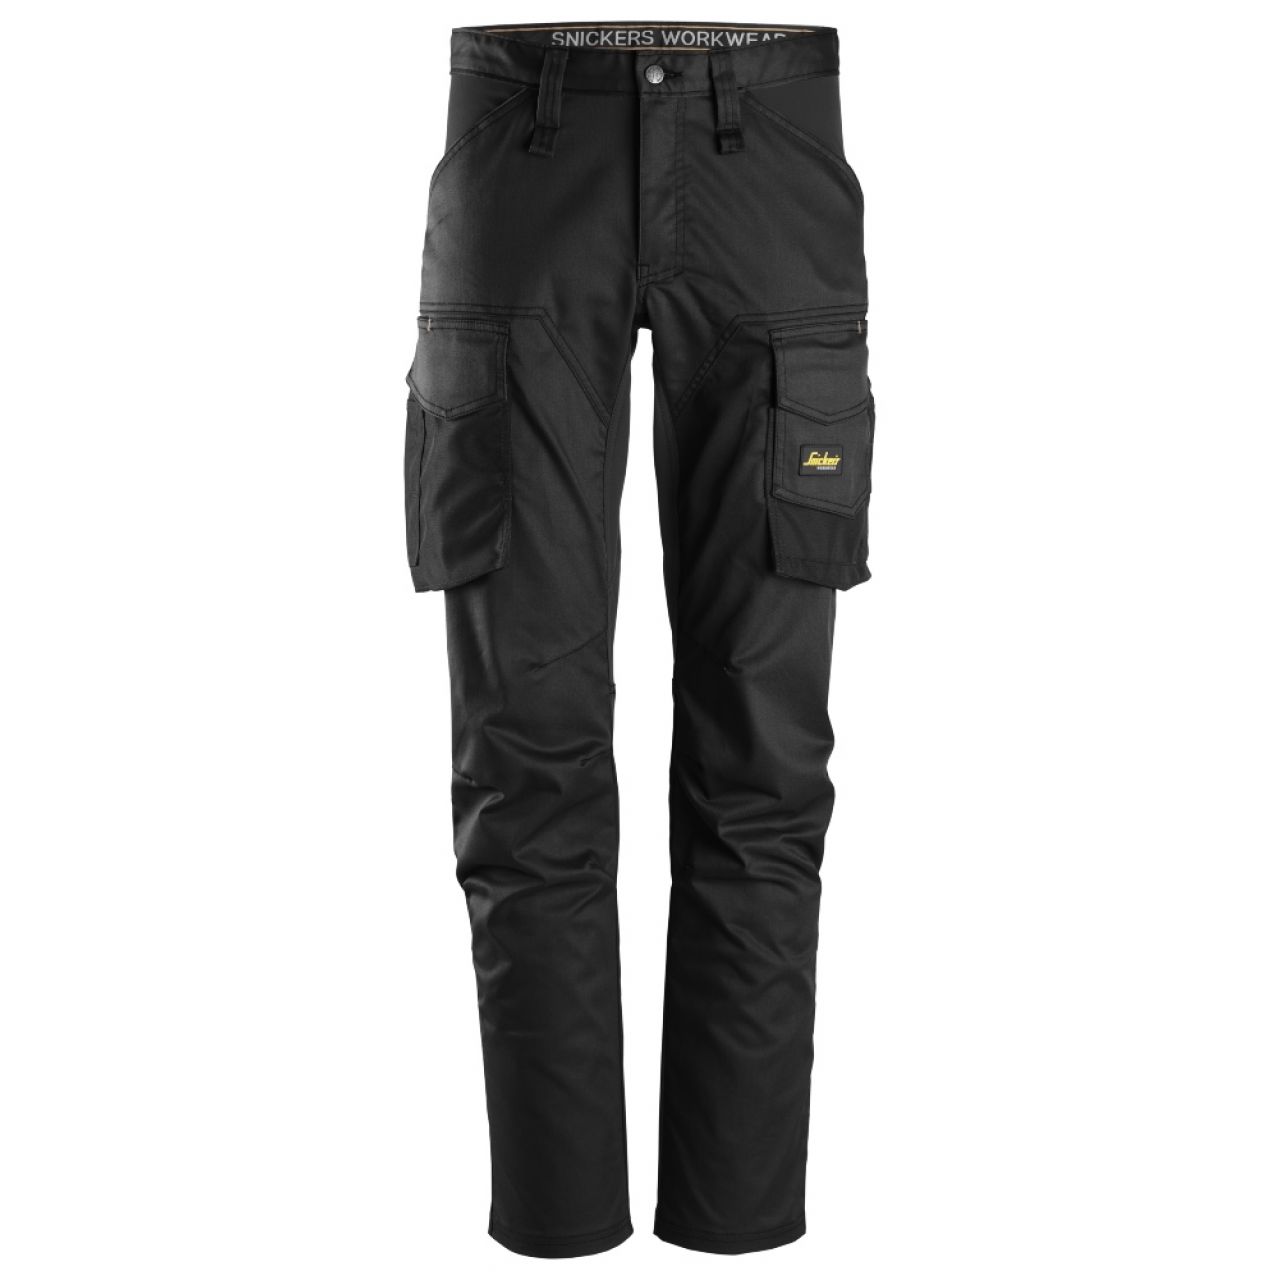 6803 Pantalones largos de trabajo elásticos sin bolsillos para las rodilleras AllroundWork negro talla 112